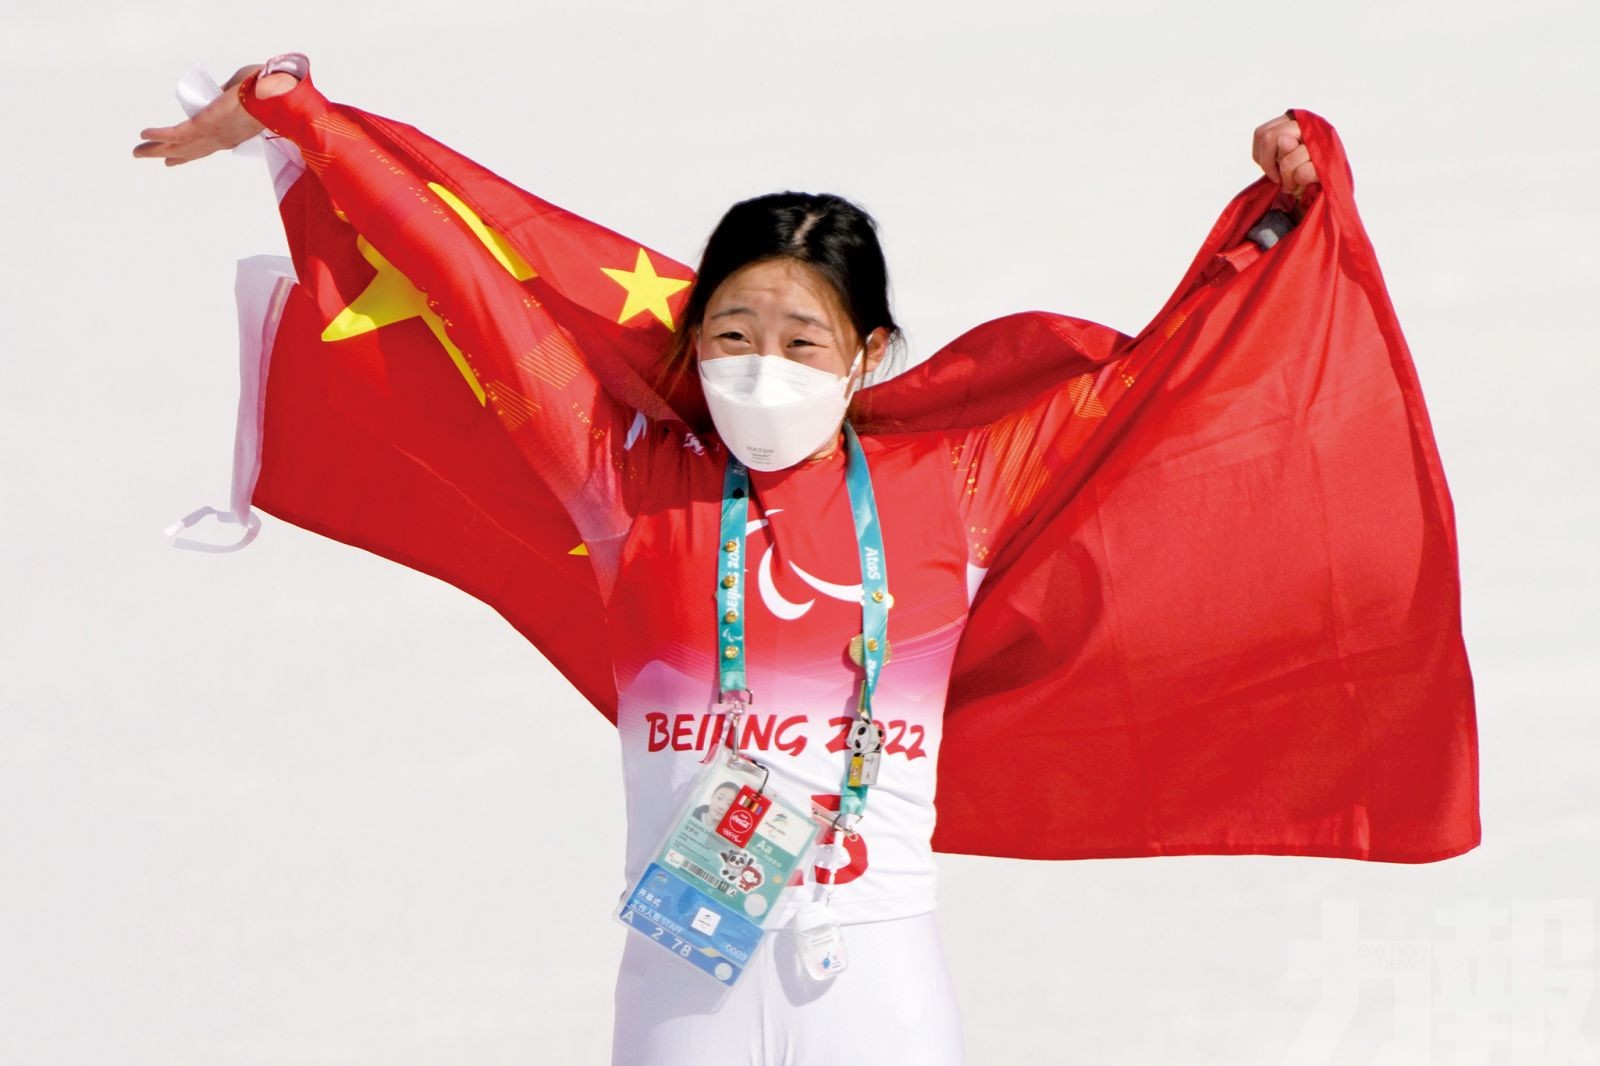 中國隊攀升至獎牌榜第一